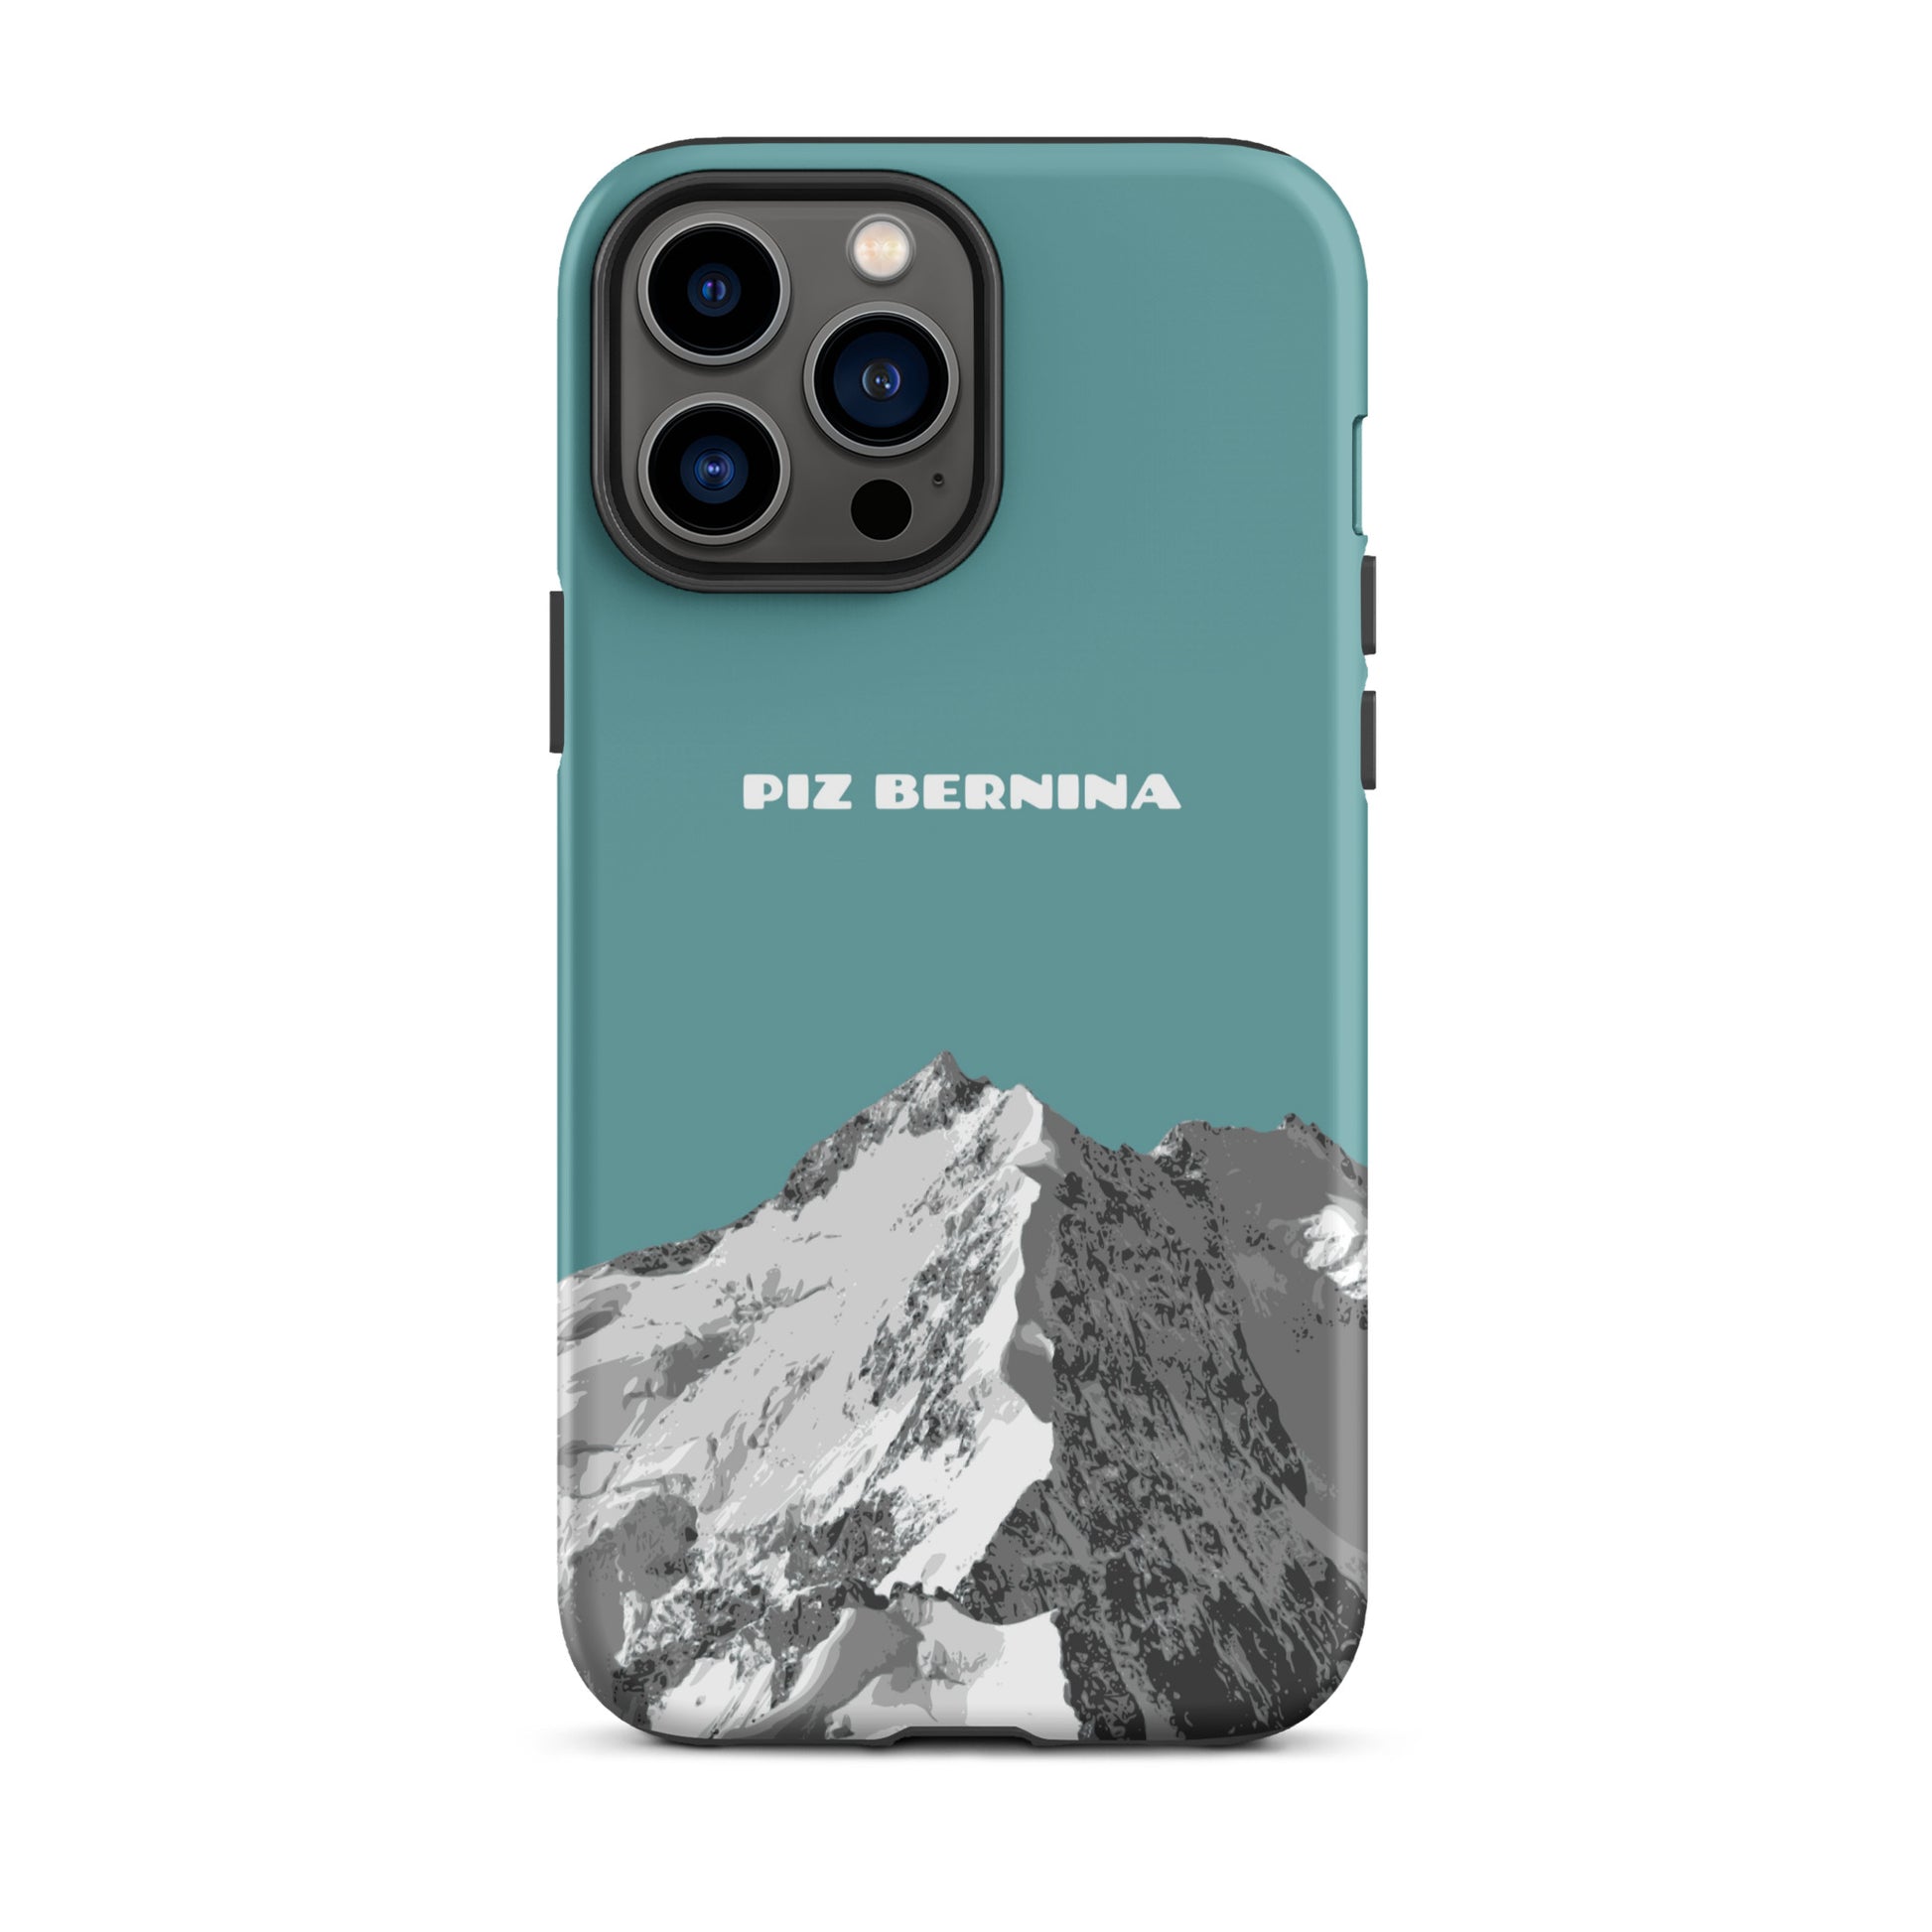 Hülle für das iPhone 13 Pro Max von Apple in der Farbe Kadettenblau, dass den Piz Bernina in Graubünden zeigt.